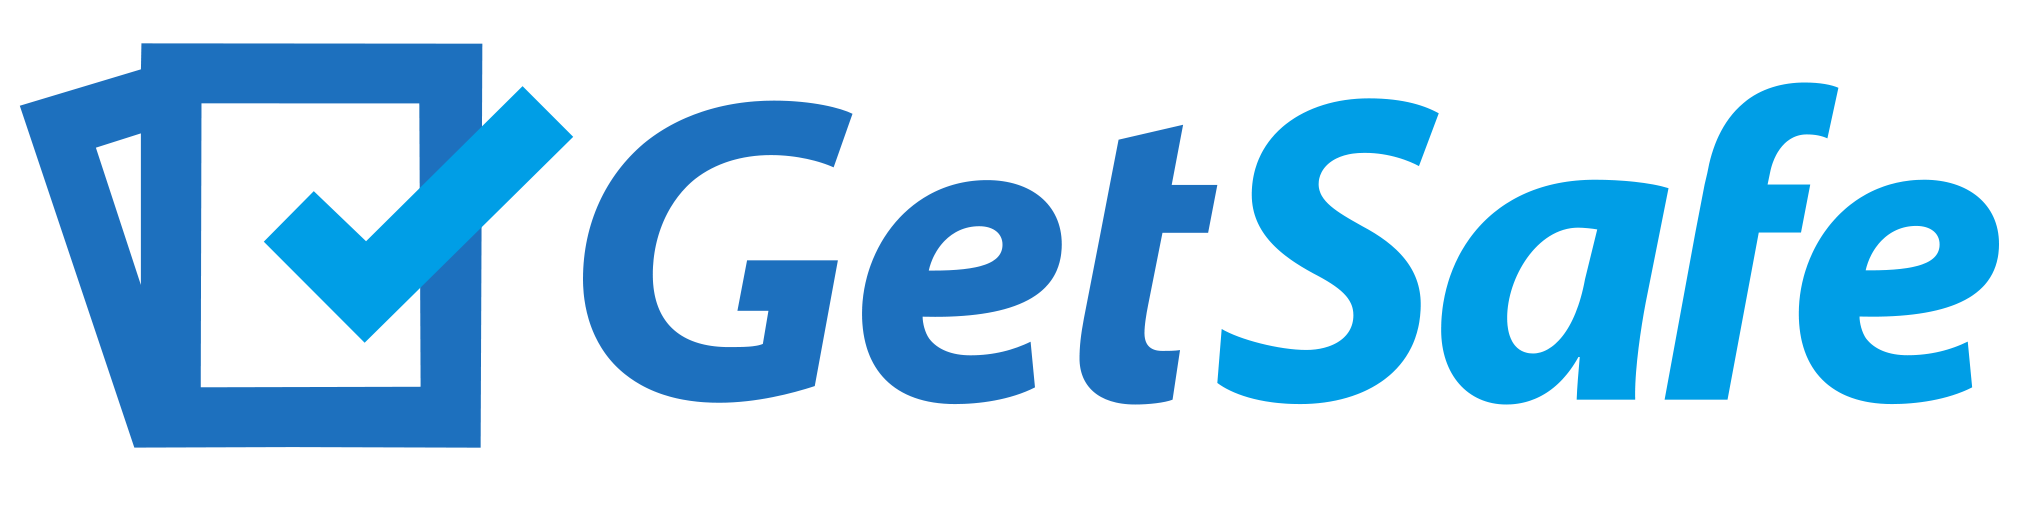 Getsafe_Logo